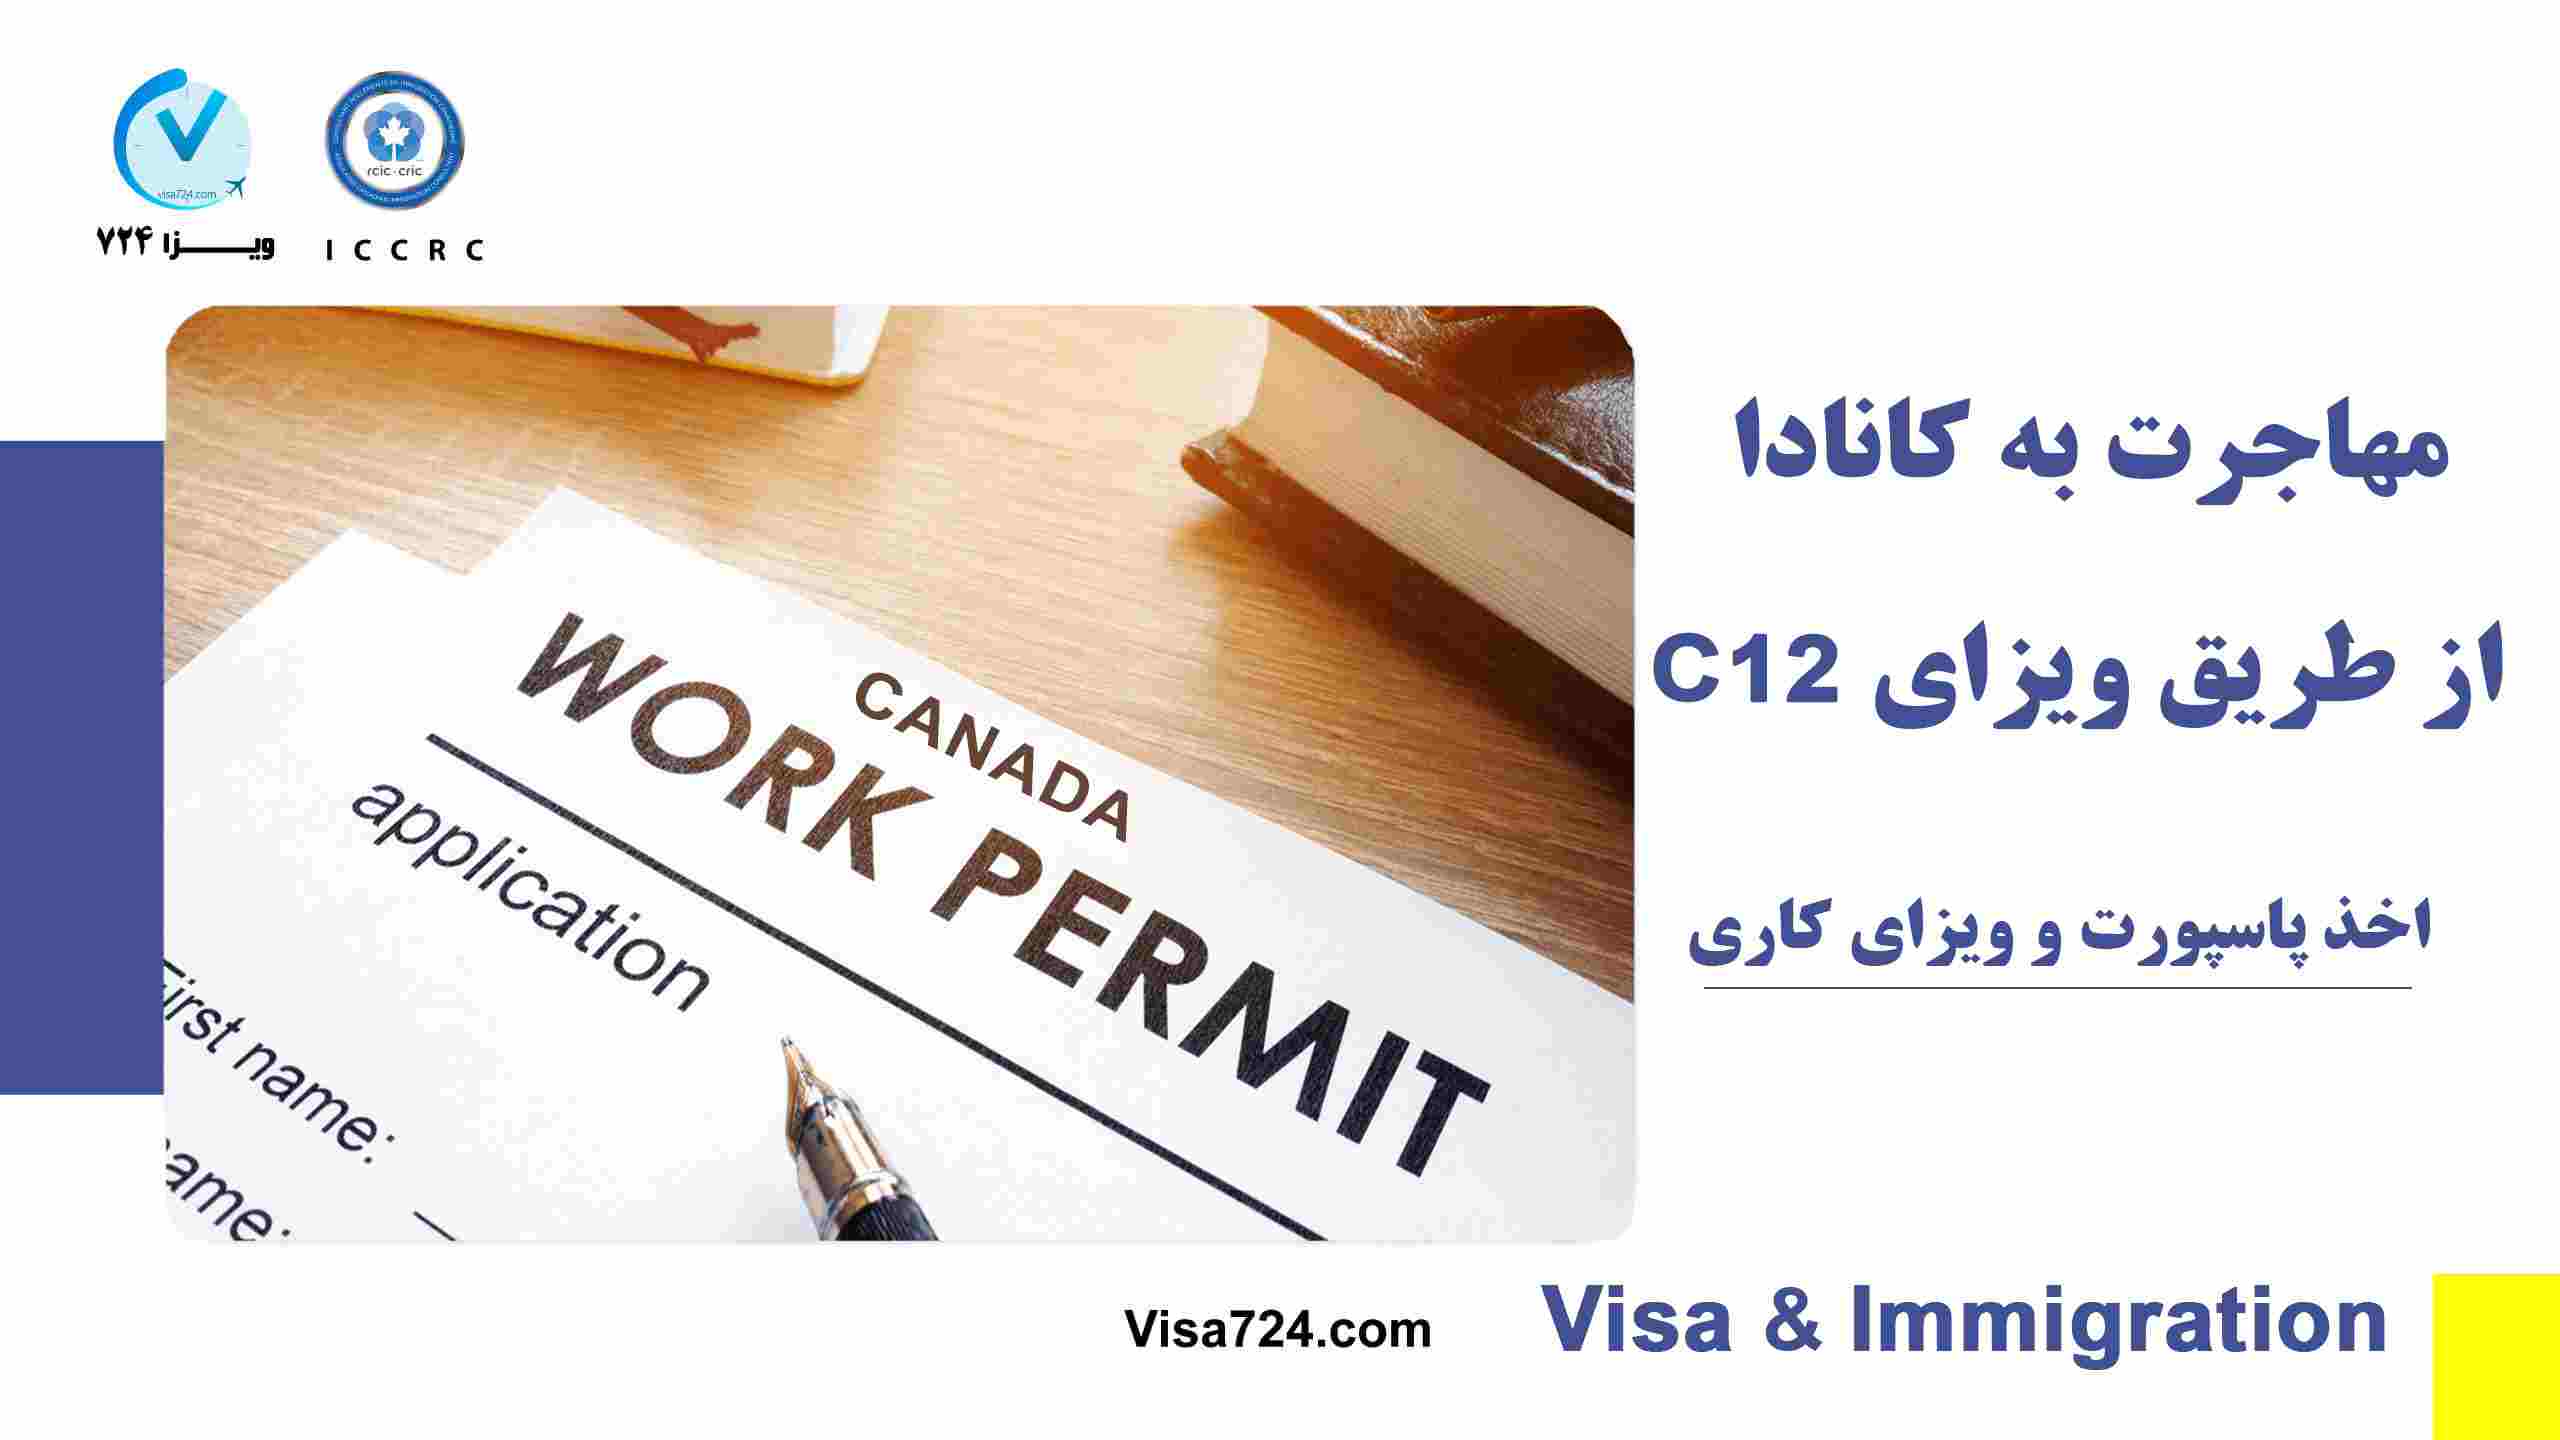 مهاجرت به کانادا از طریق ویزای c12